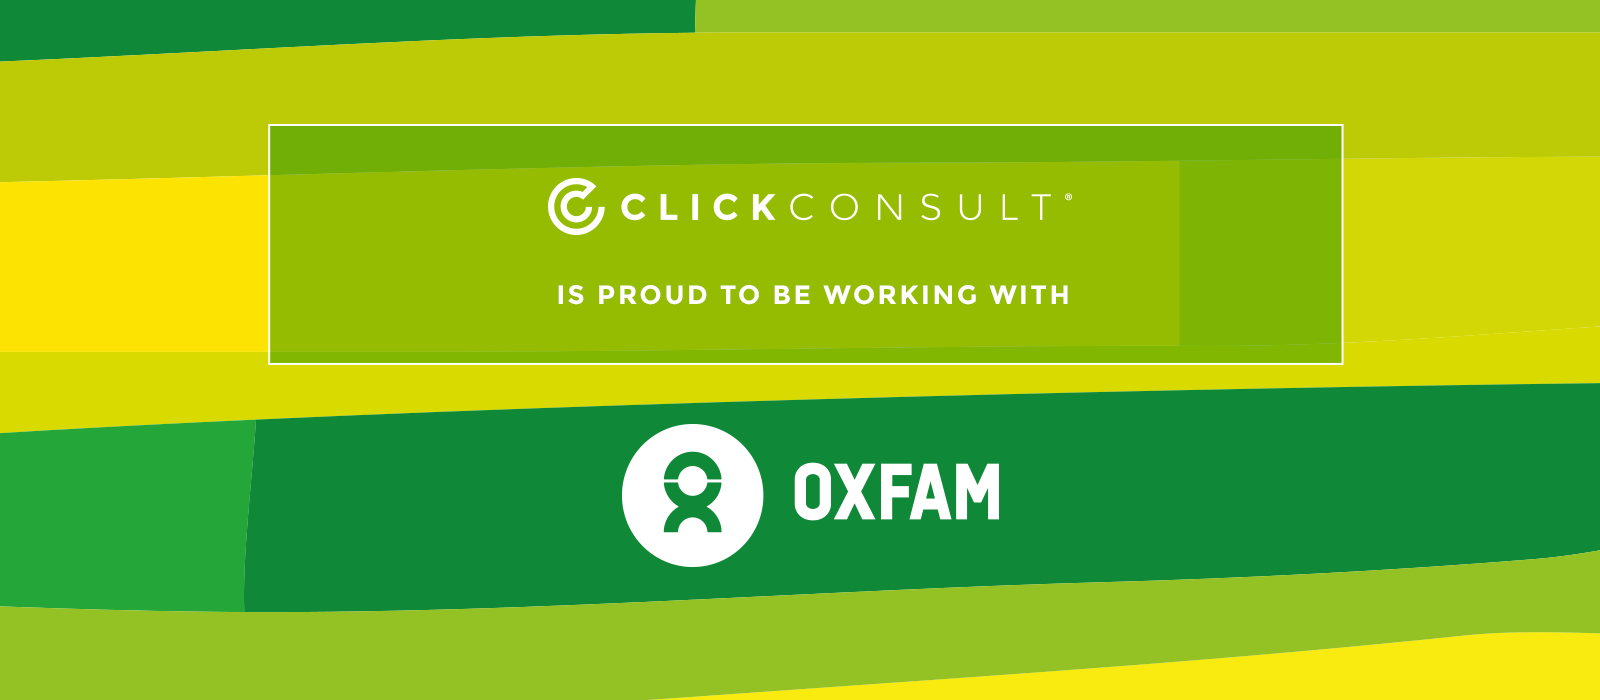 Oxfam blog image